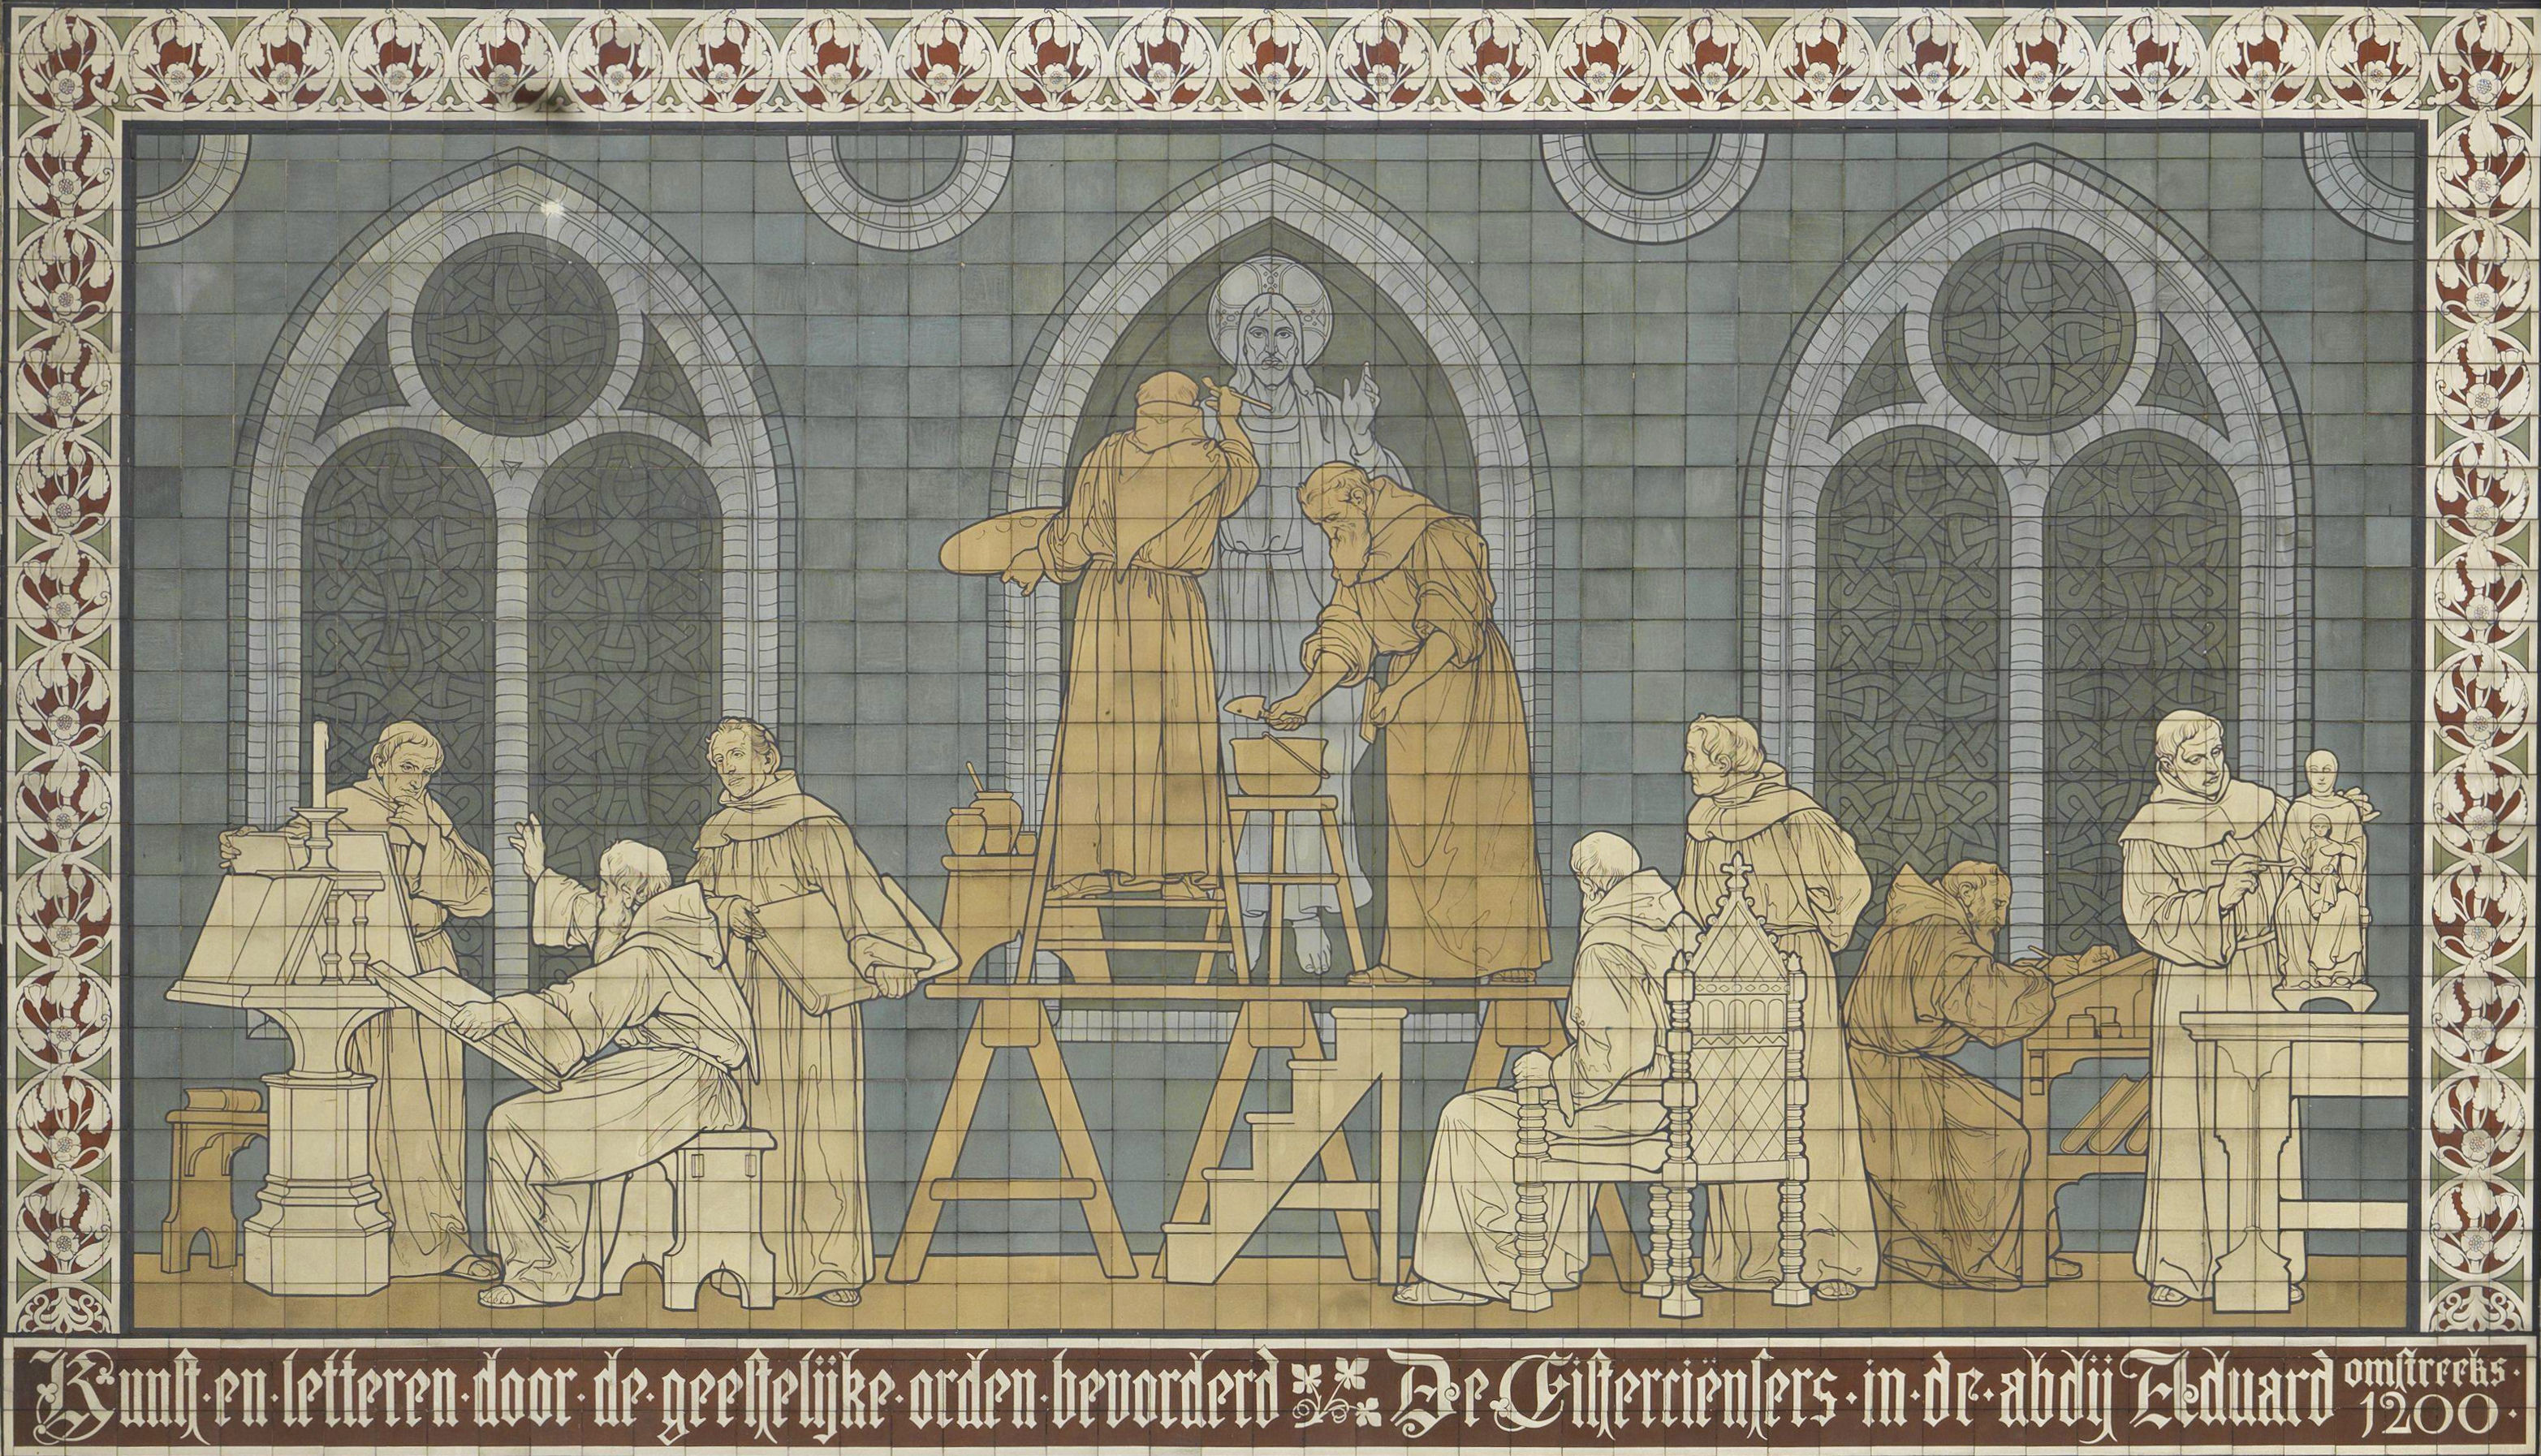 De Cisterciënzers in de abdij van Aduard omstreeks het jaar 1200. Het betreft een tegelplateau aan de buitenkant van het (foto) Rijksmuseum Amsterdam en is gemaakt omstreeks 1855 door Georg Sturm die overlijdt in 1923. Licentie: Public Domain.